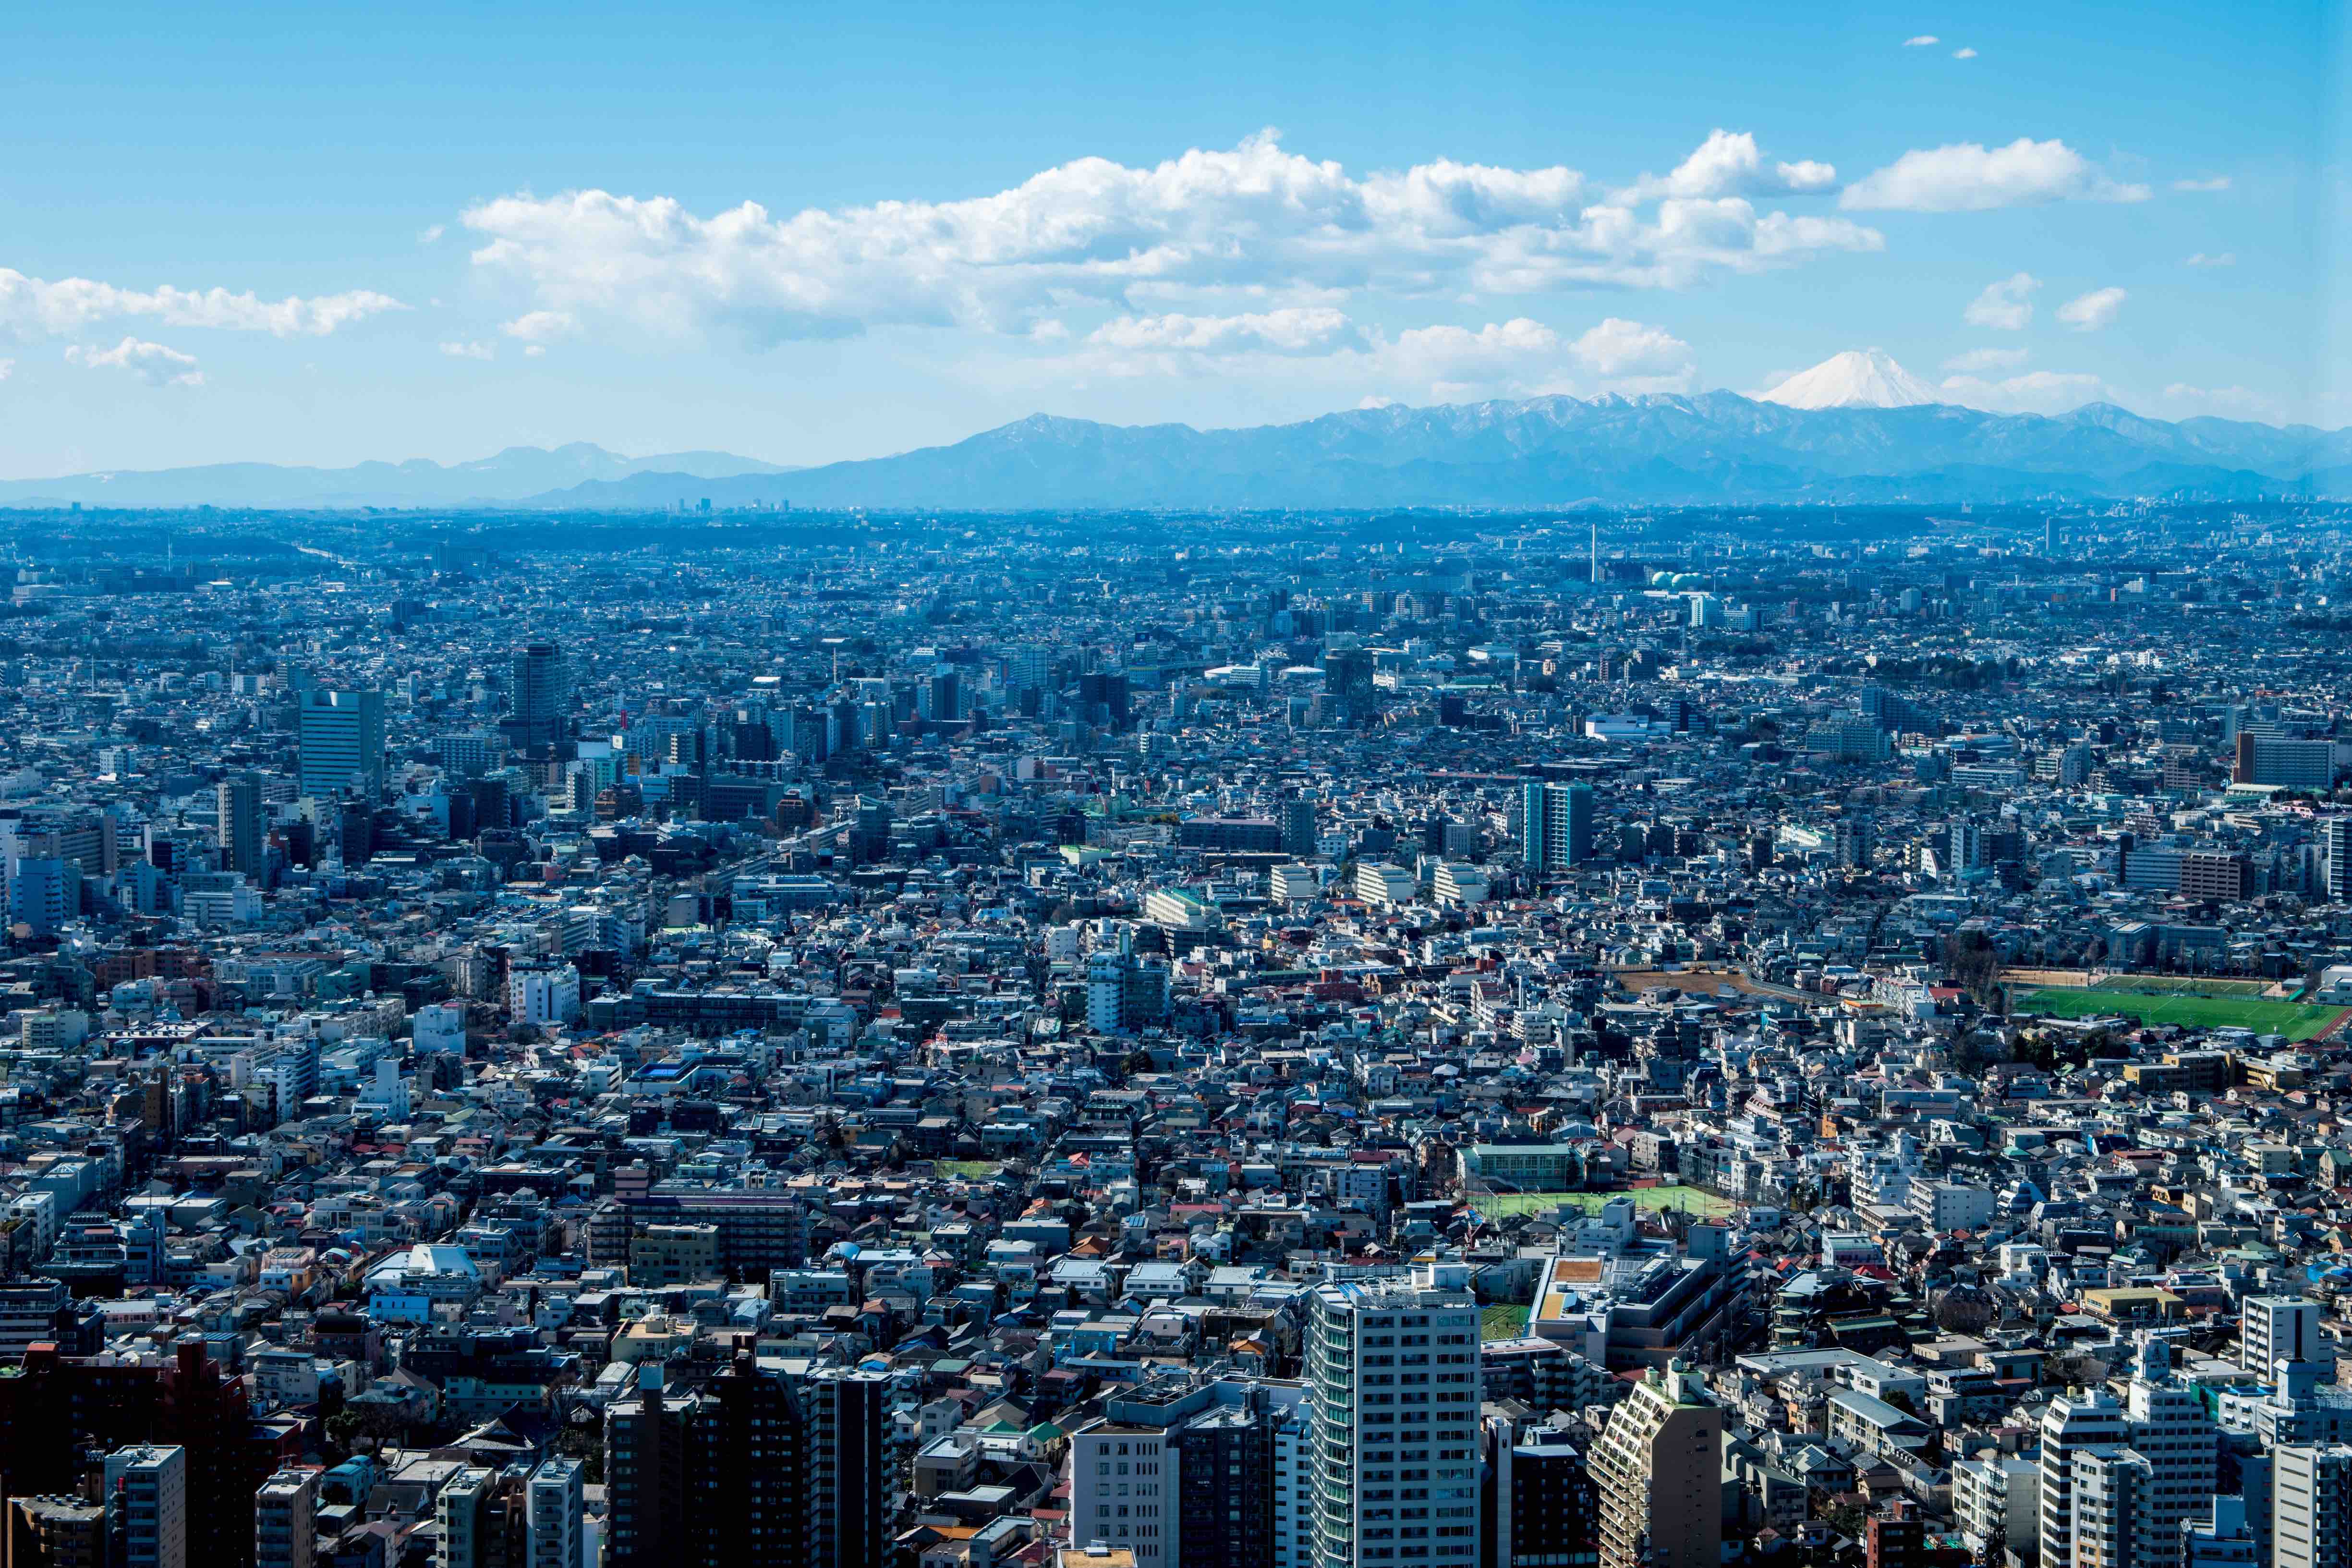 vue globale de Tokyo depuis le Tokyo Metropolitan Government Building au 45e étage